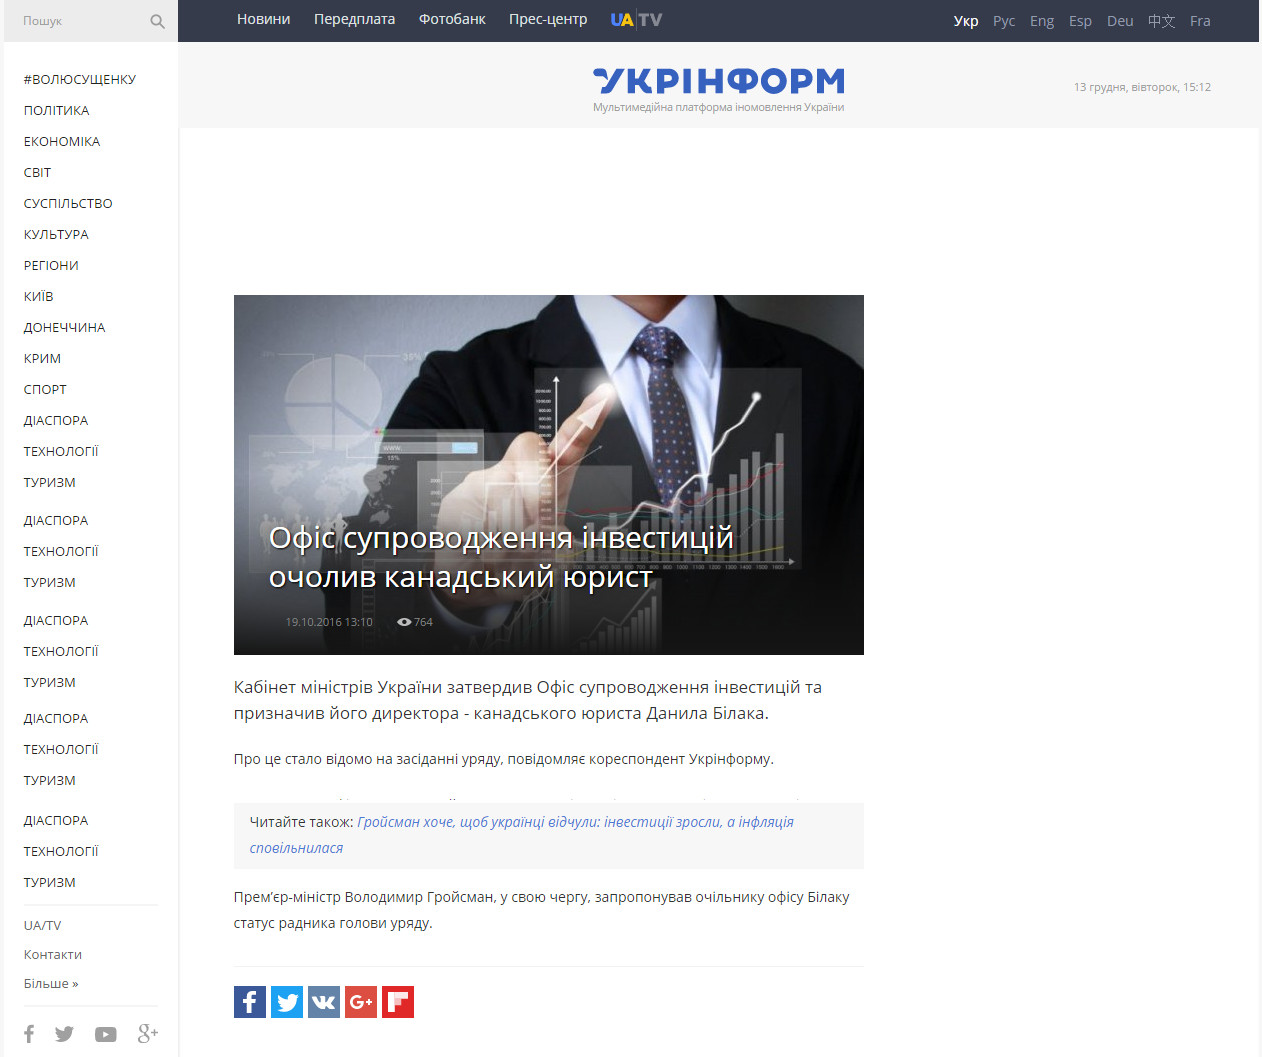 http://www.ukrinform.ua/rubric-economics/2104259-ofis-suprovodzenna-investicij-ocoliv-kanadskij-urist.html